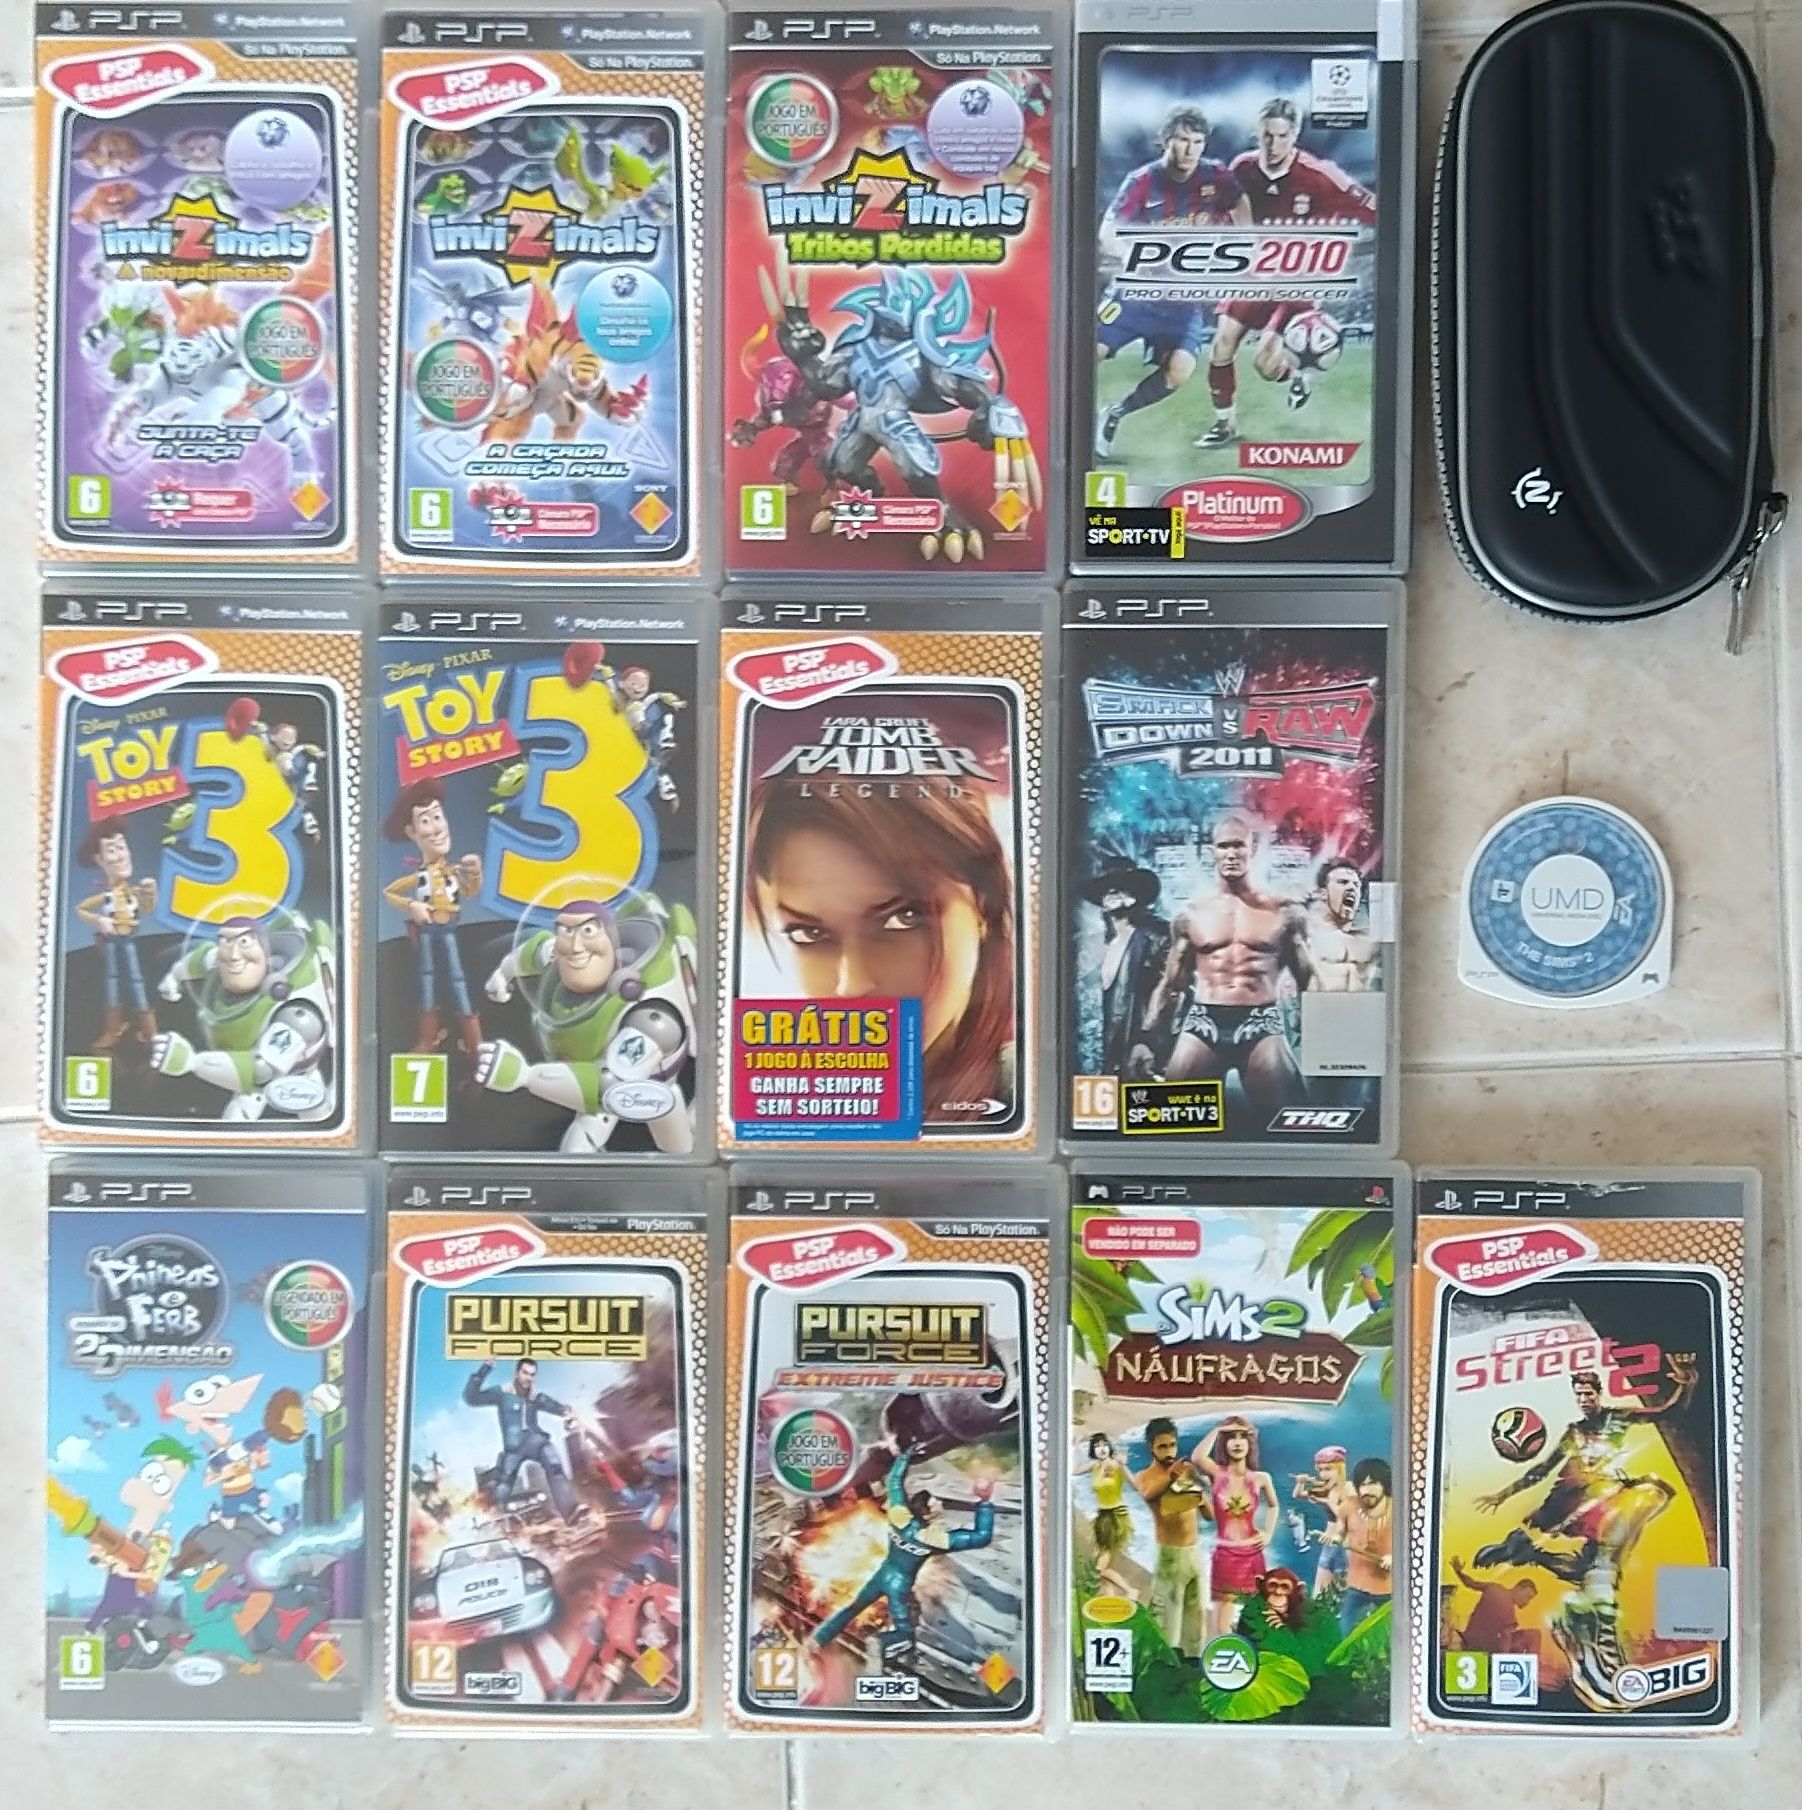 Jogos PSP usados Alverca Do Ribatejo E Sobralinho • OLX Portugal